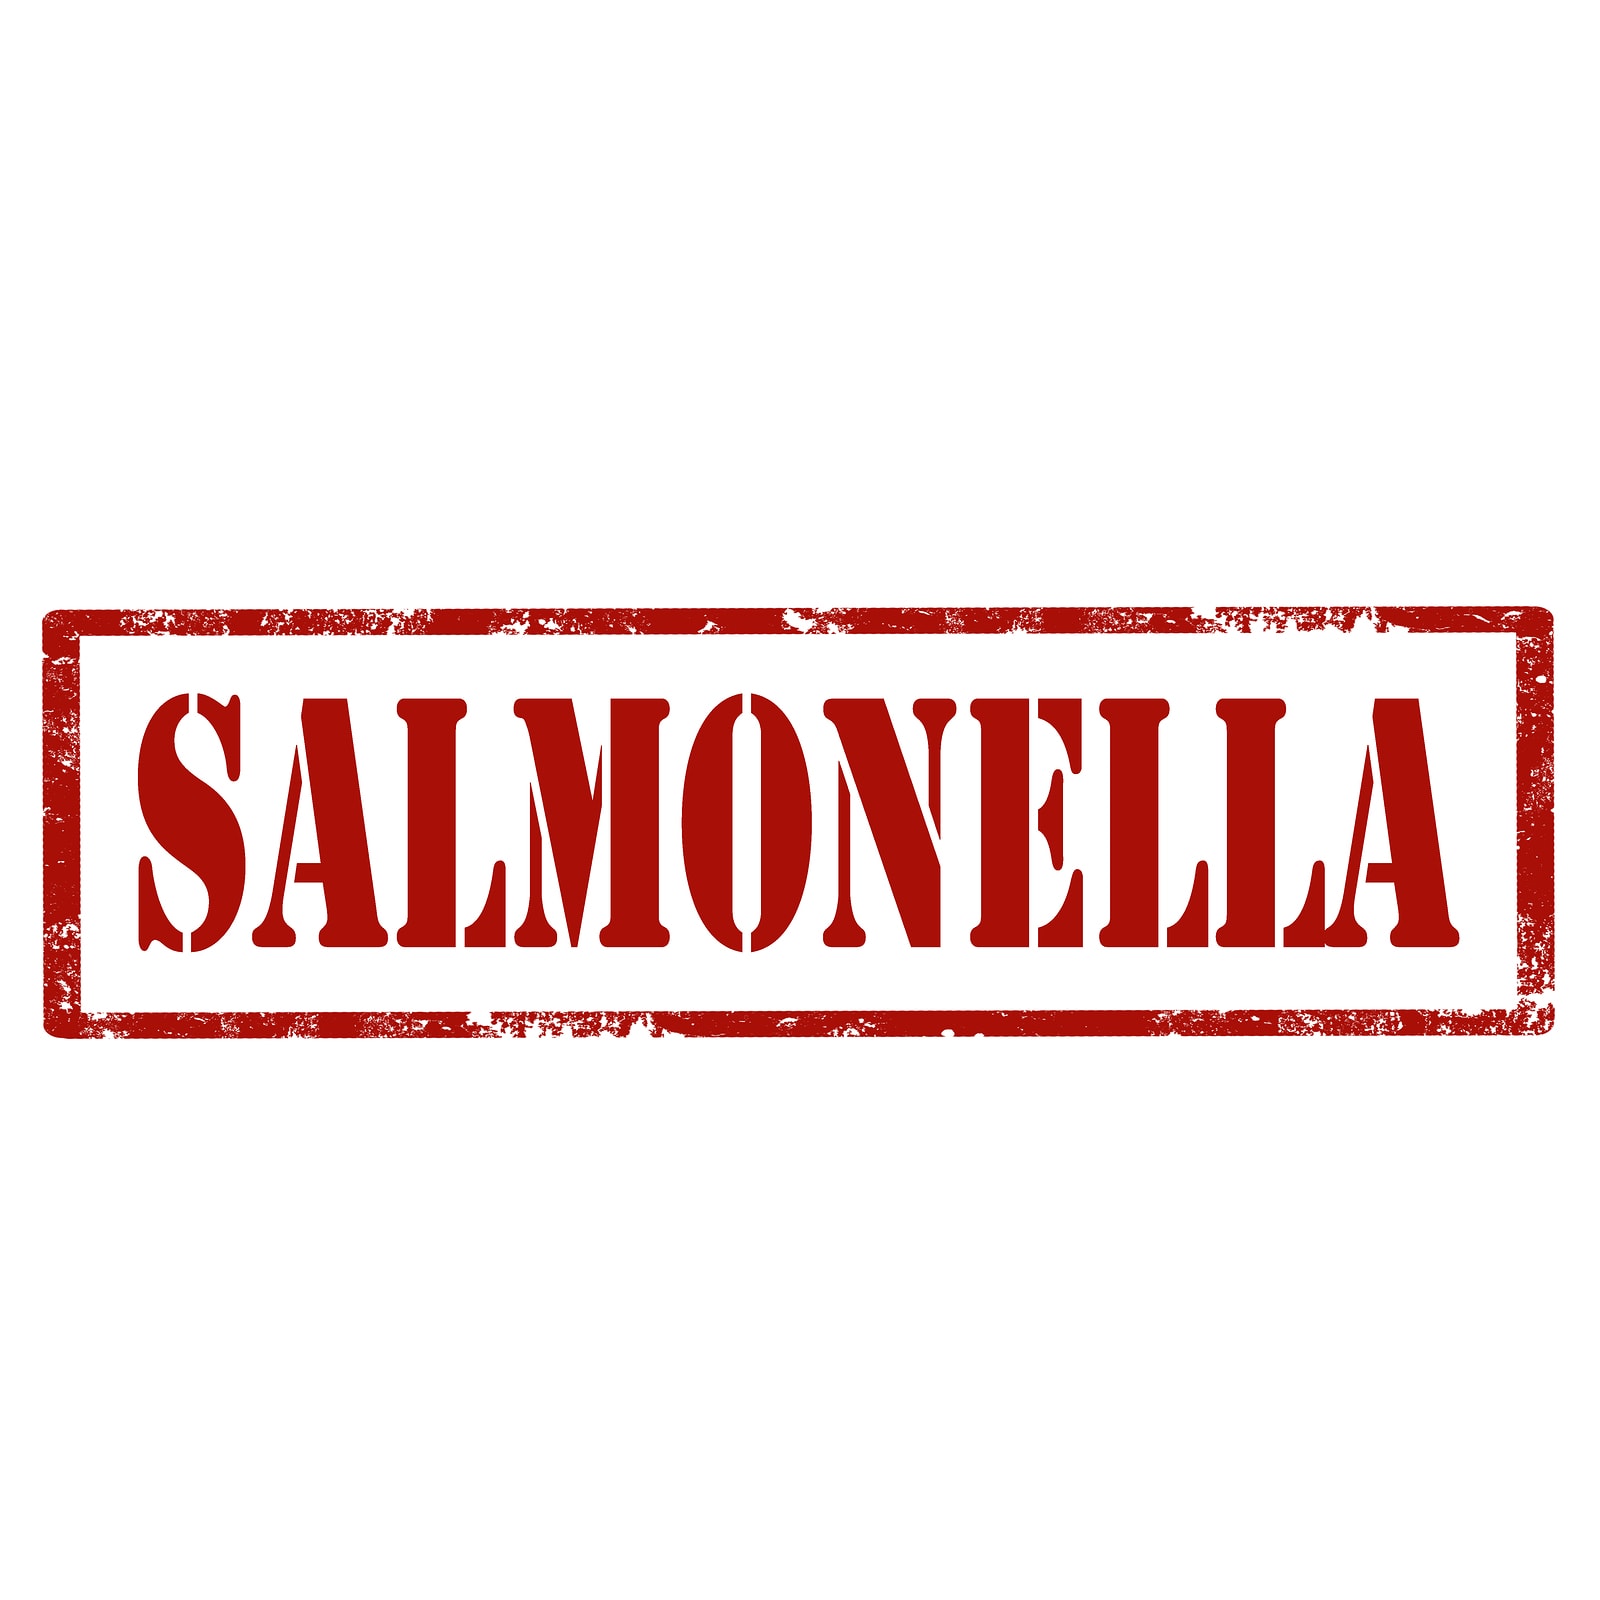 salmonella przyczyny objawy leczenie